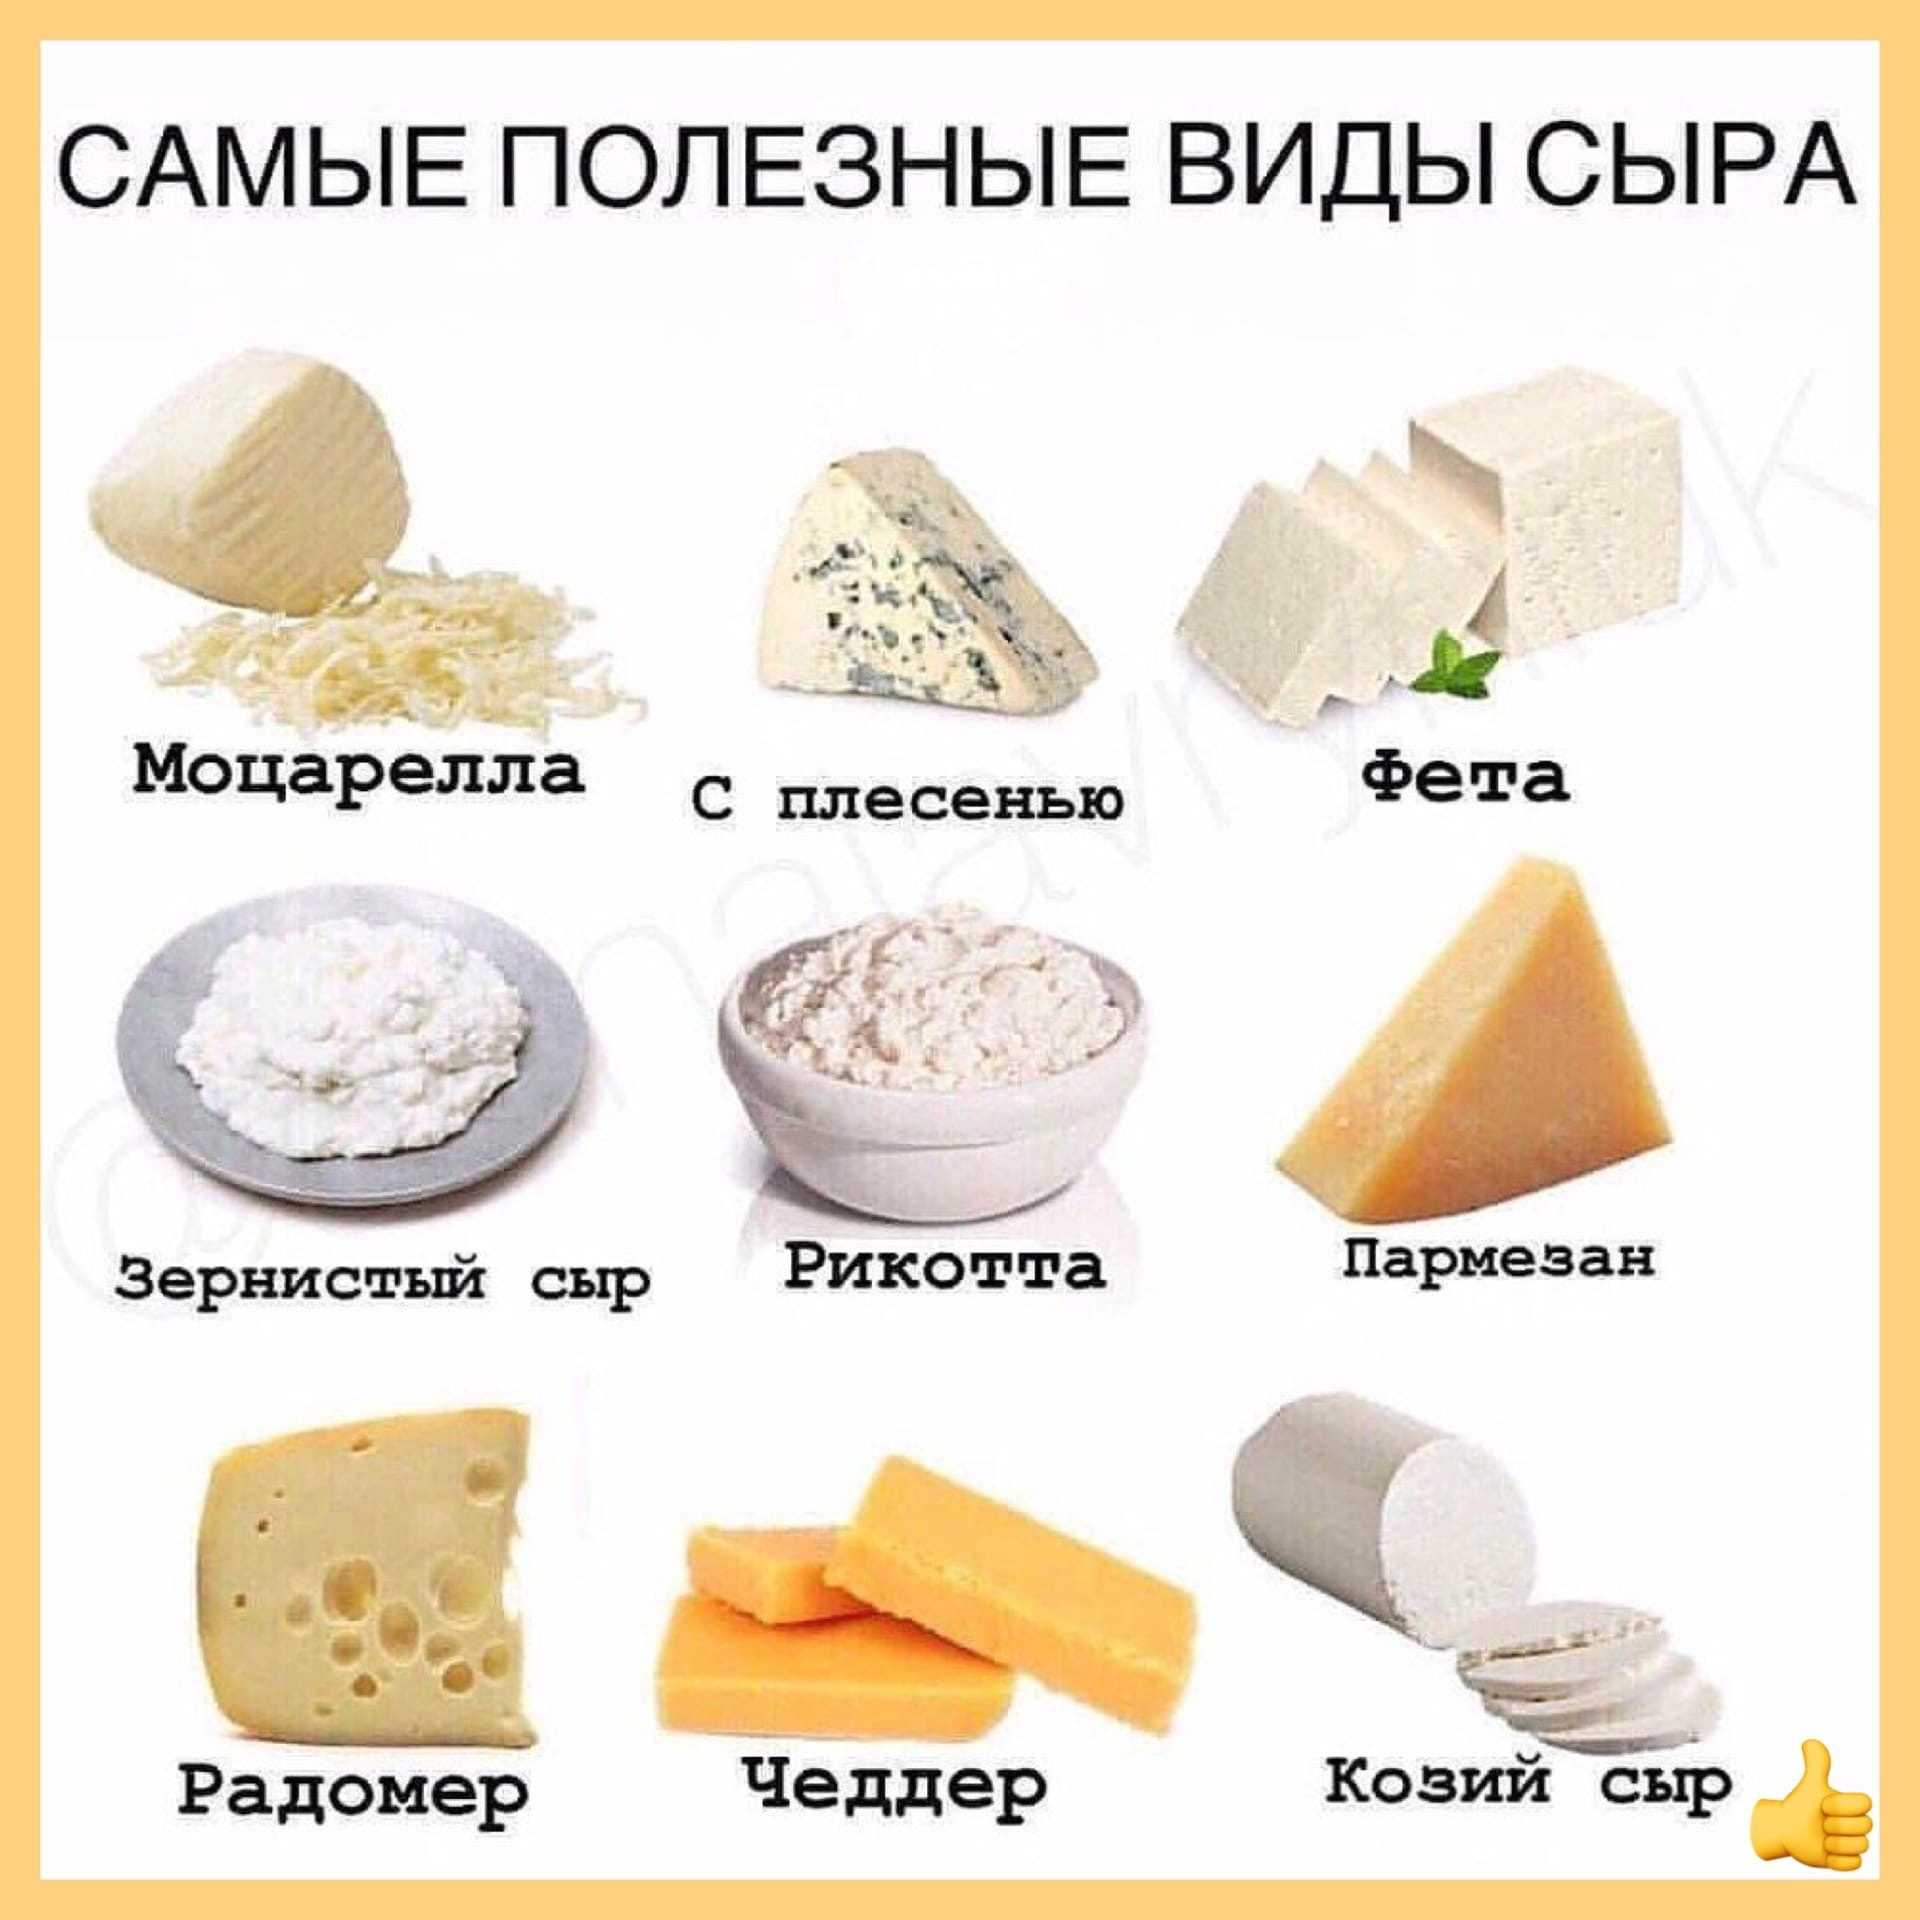 Moldiest cheese